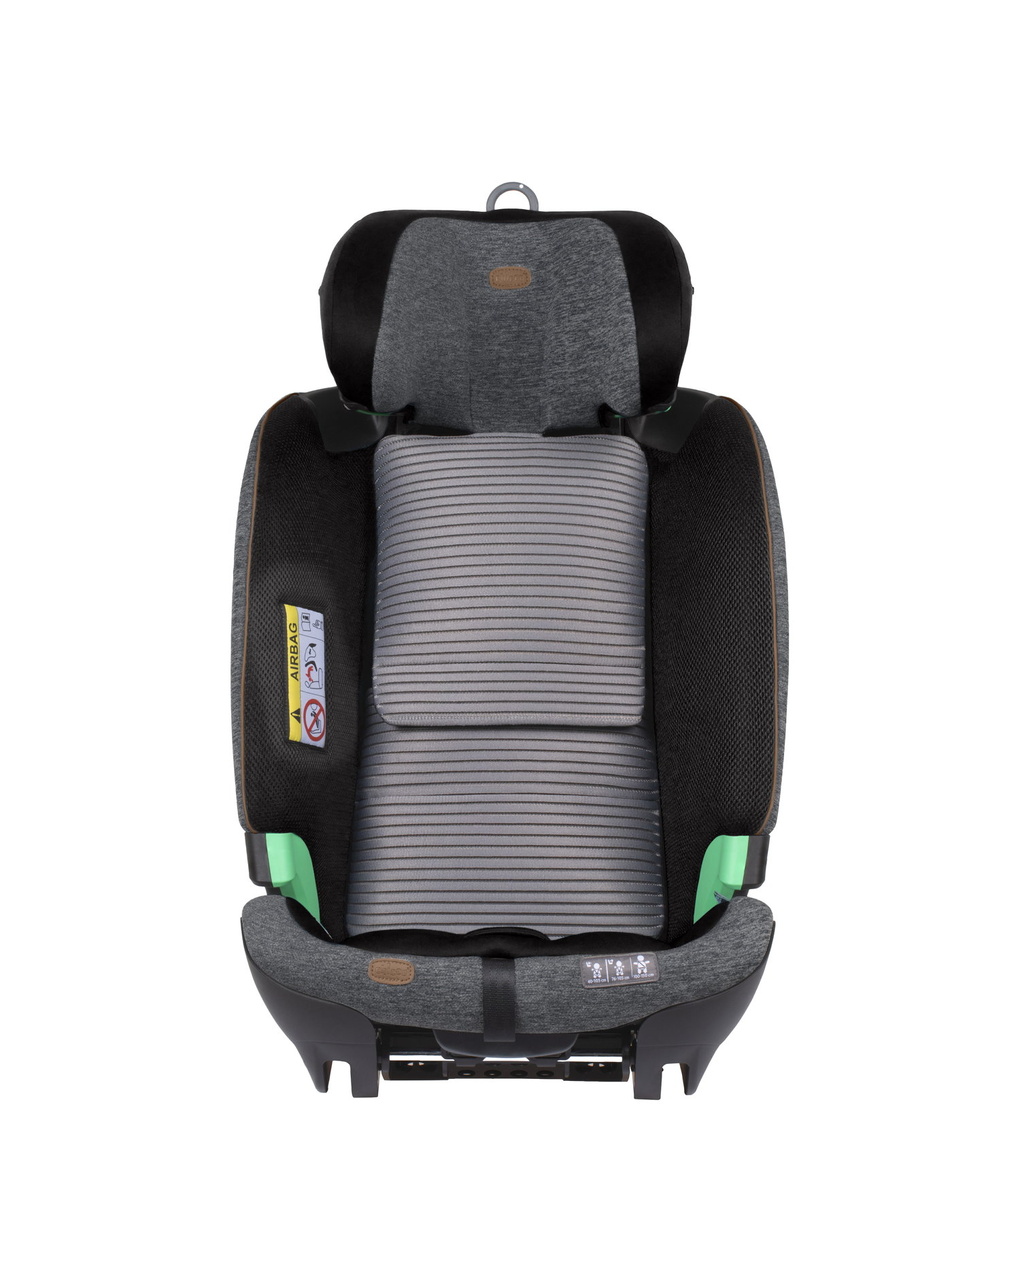 Seggiolino bi-seat senza base full 360 (61-150 cm)  black melange - chicco